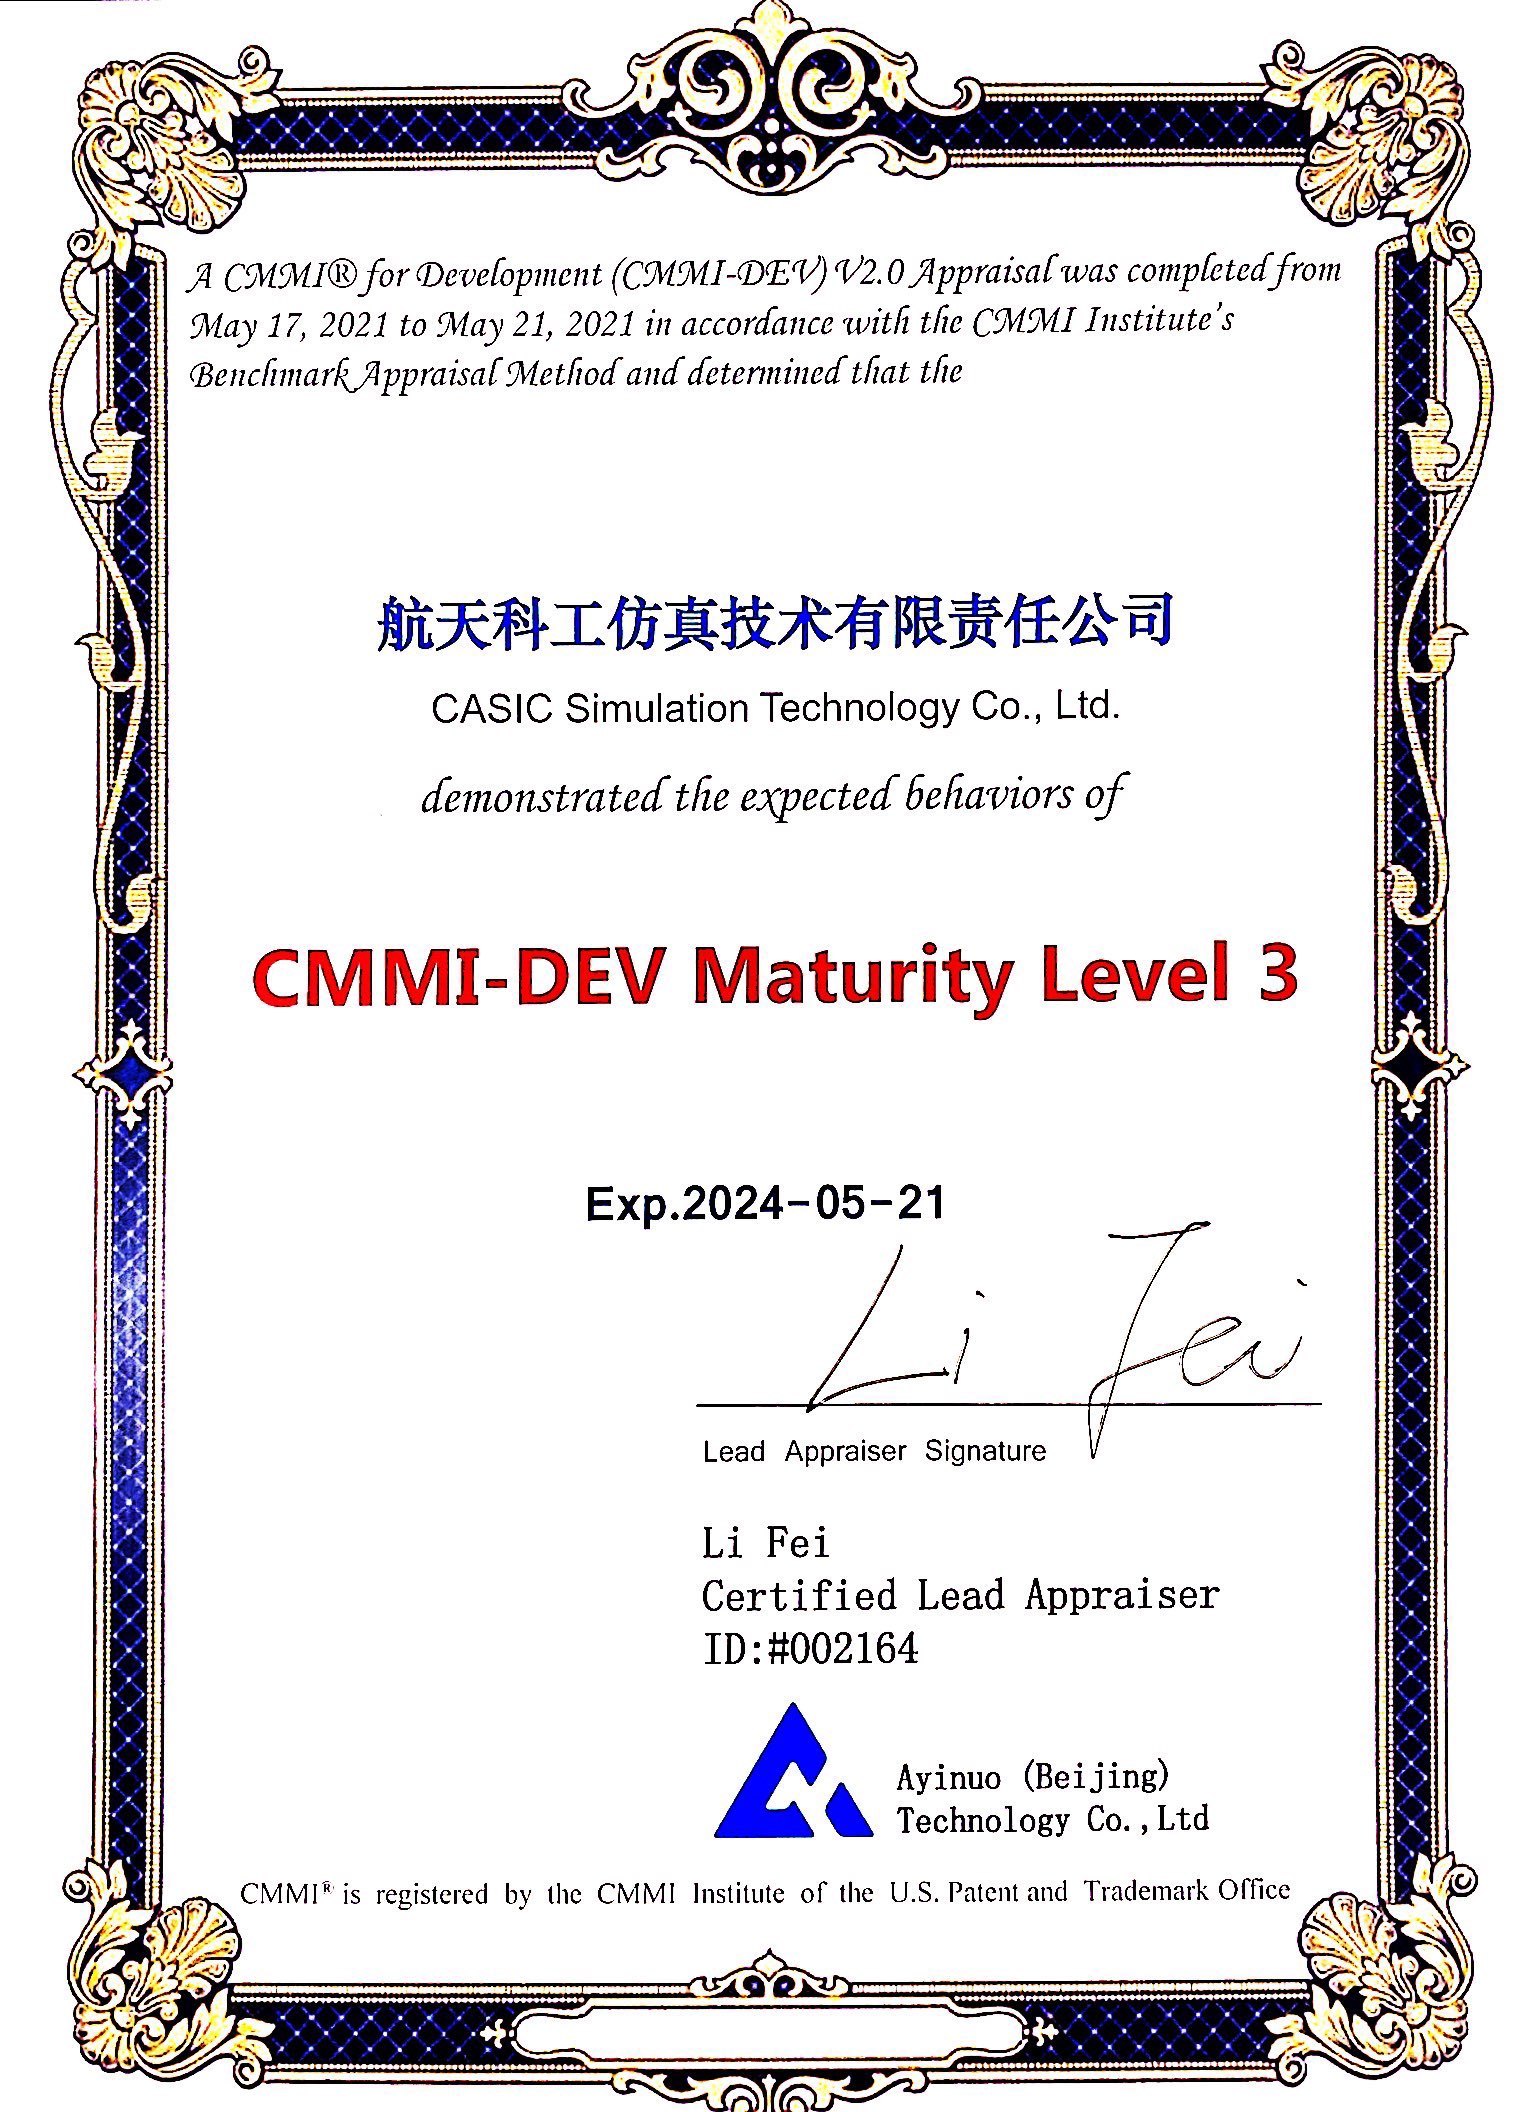 航天科工仿真技术有限公司cmmi3级认证